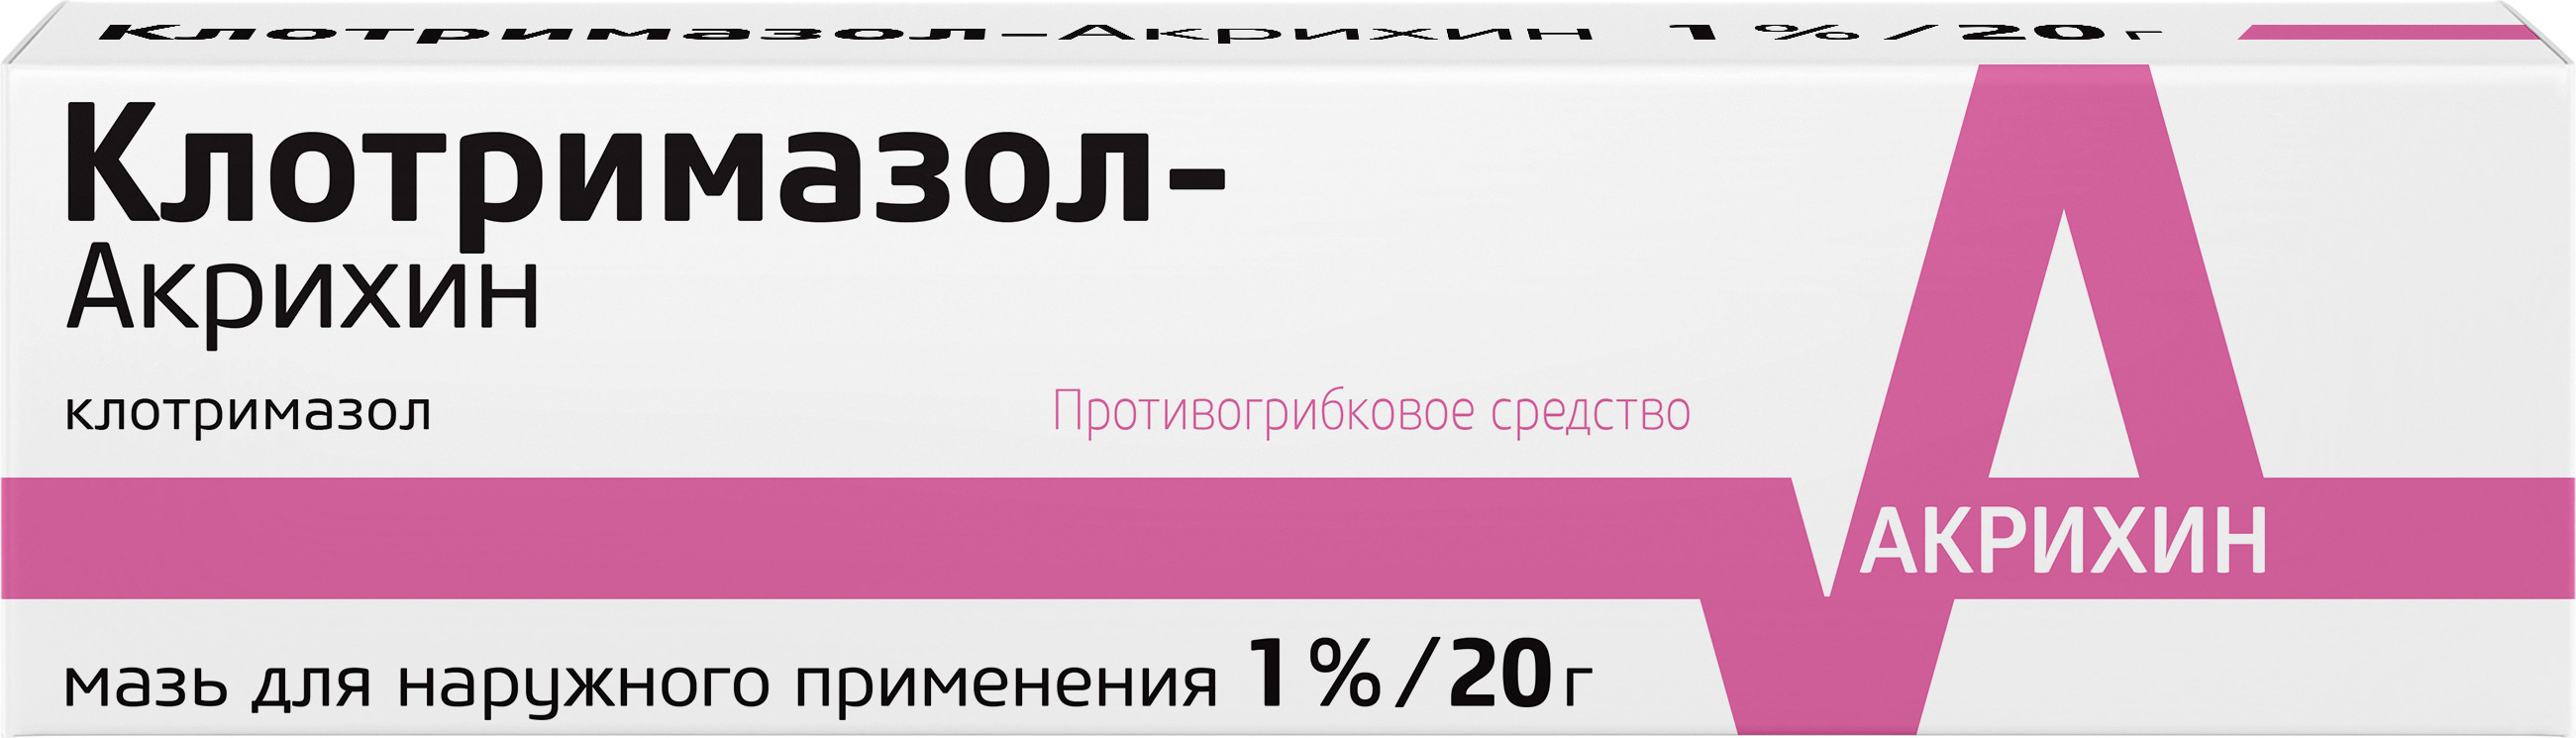 Клотримазол-Акрихин, мазь 1%, 20 г клотримазол акрихин мазь для наружного применения 1% 20г